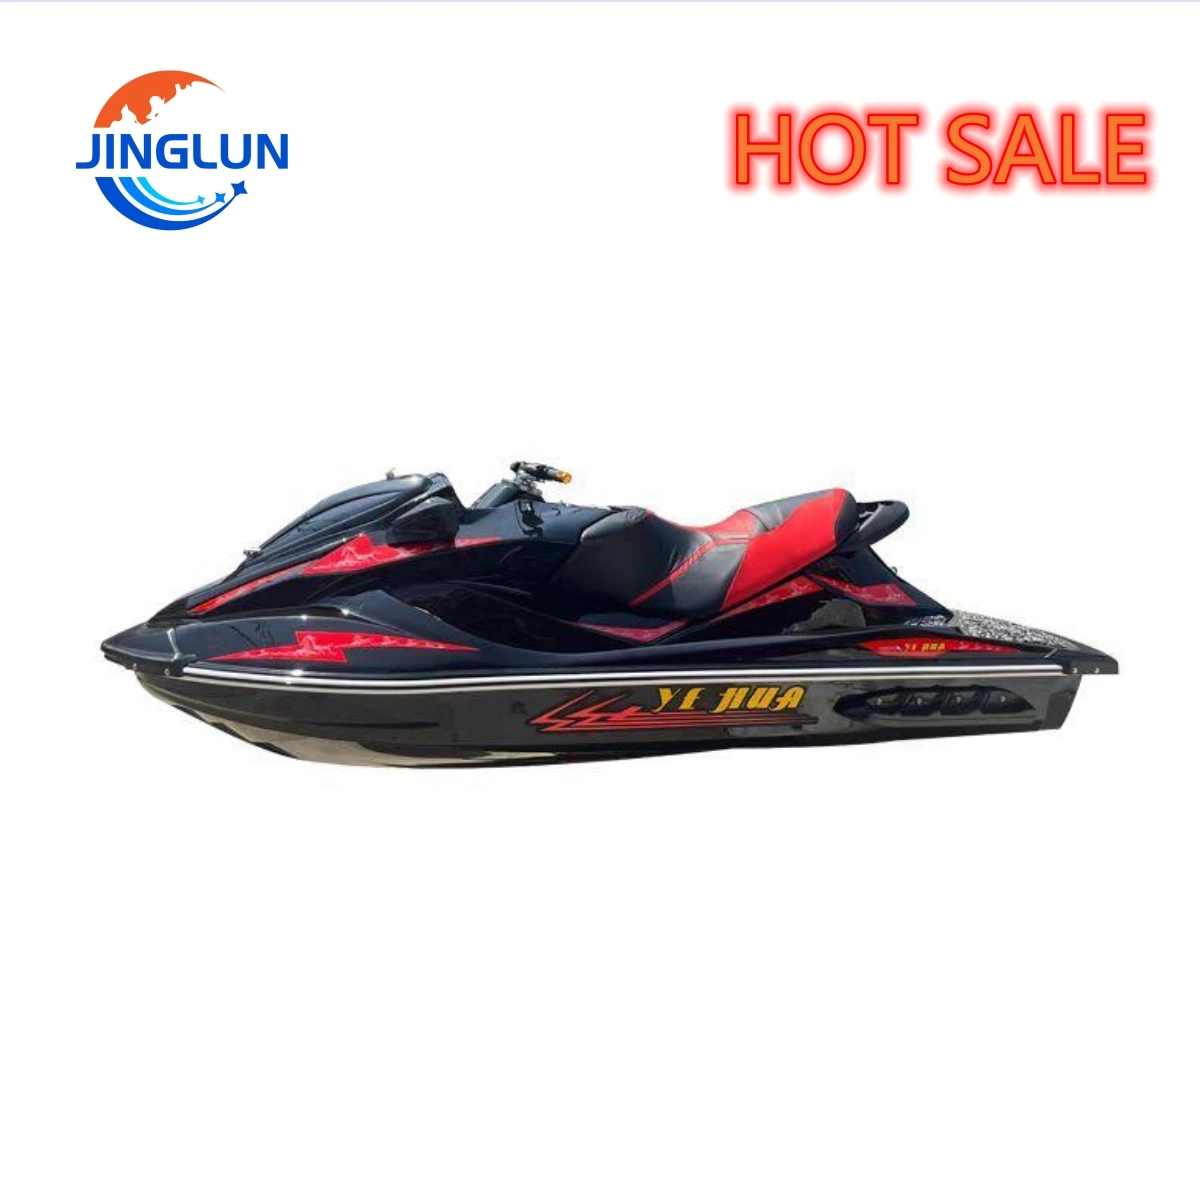 Modernes Boot für Spaß Wasser Auto Wasser Sport Jet Motor Bootsausrüstung Schwimmende Luxus Jet Ski auf dem Wasser